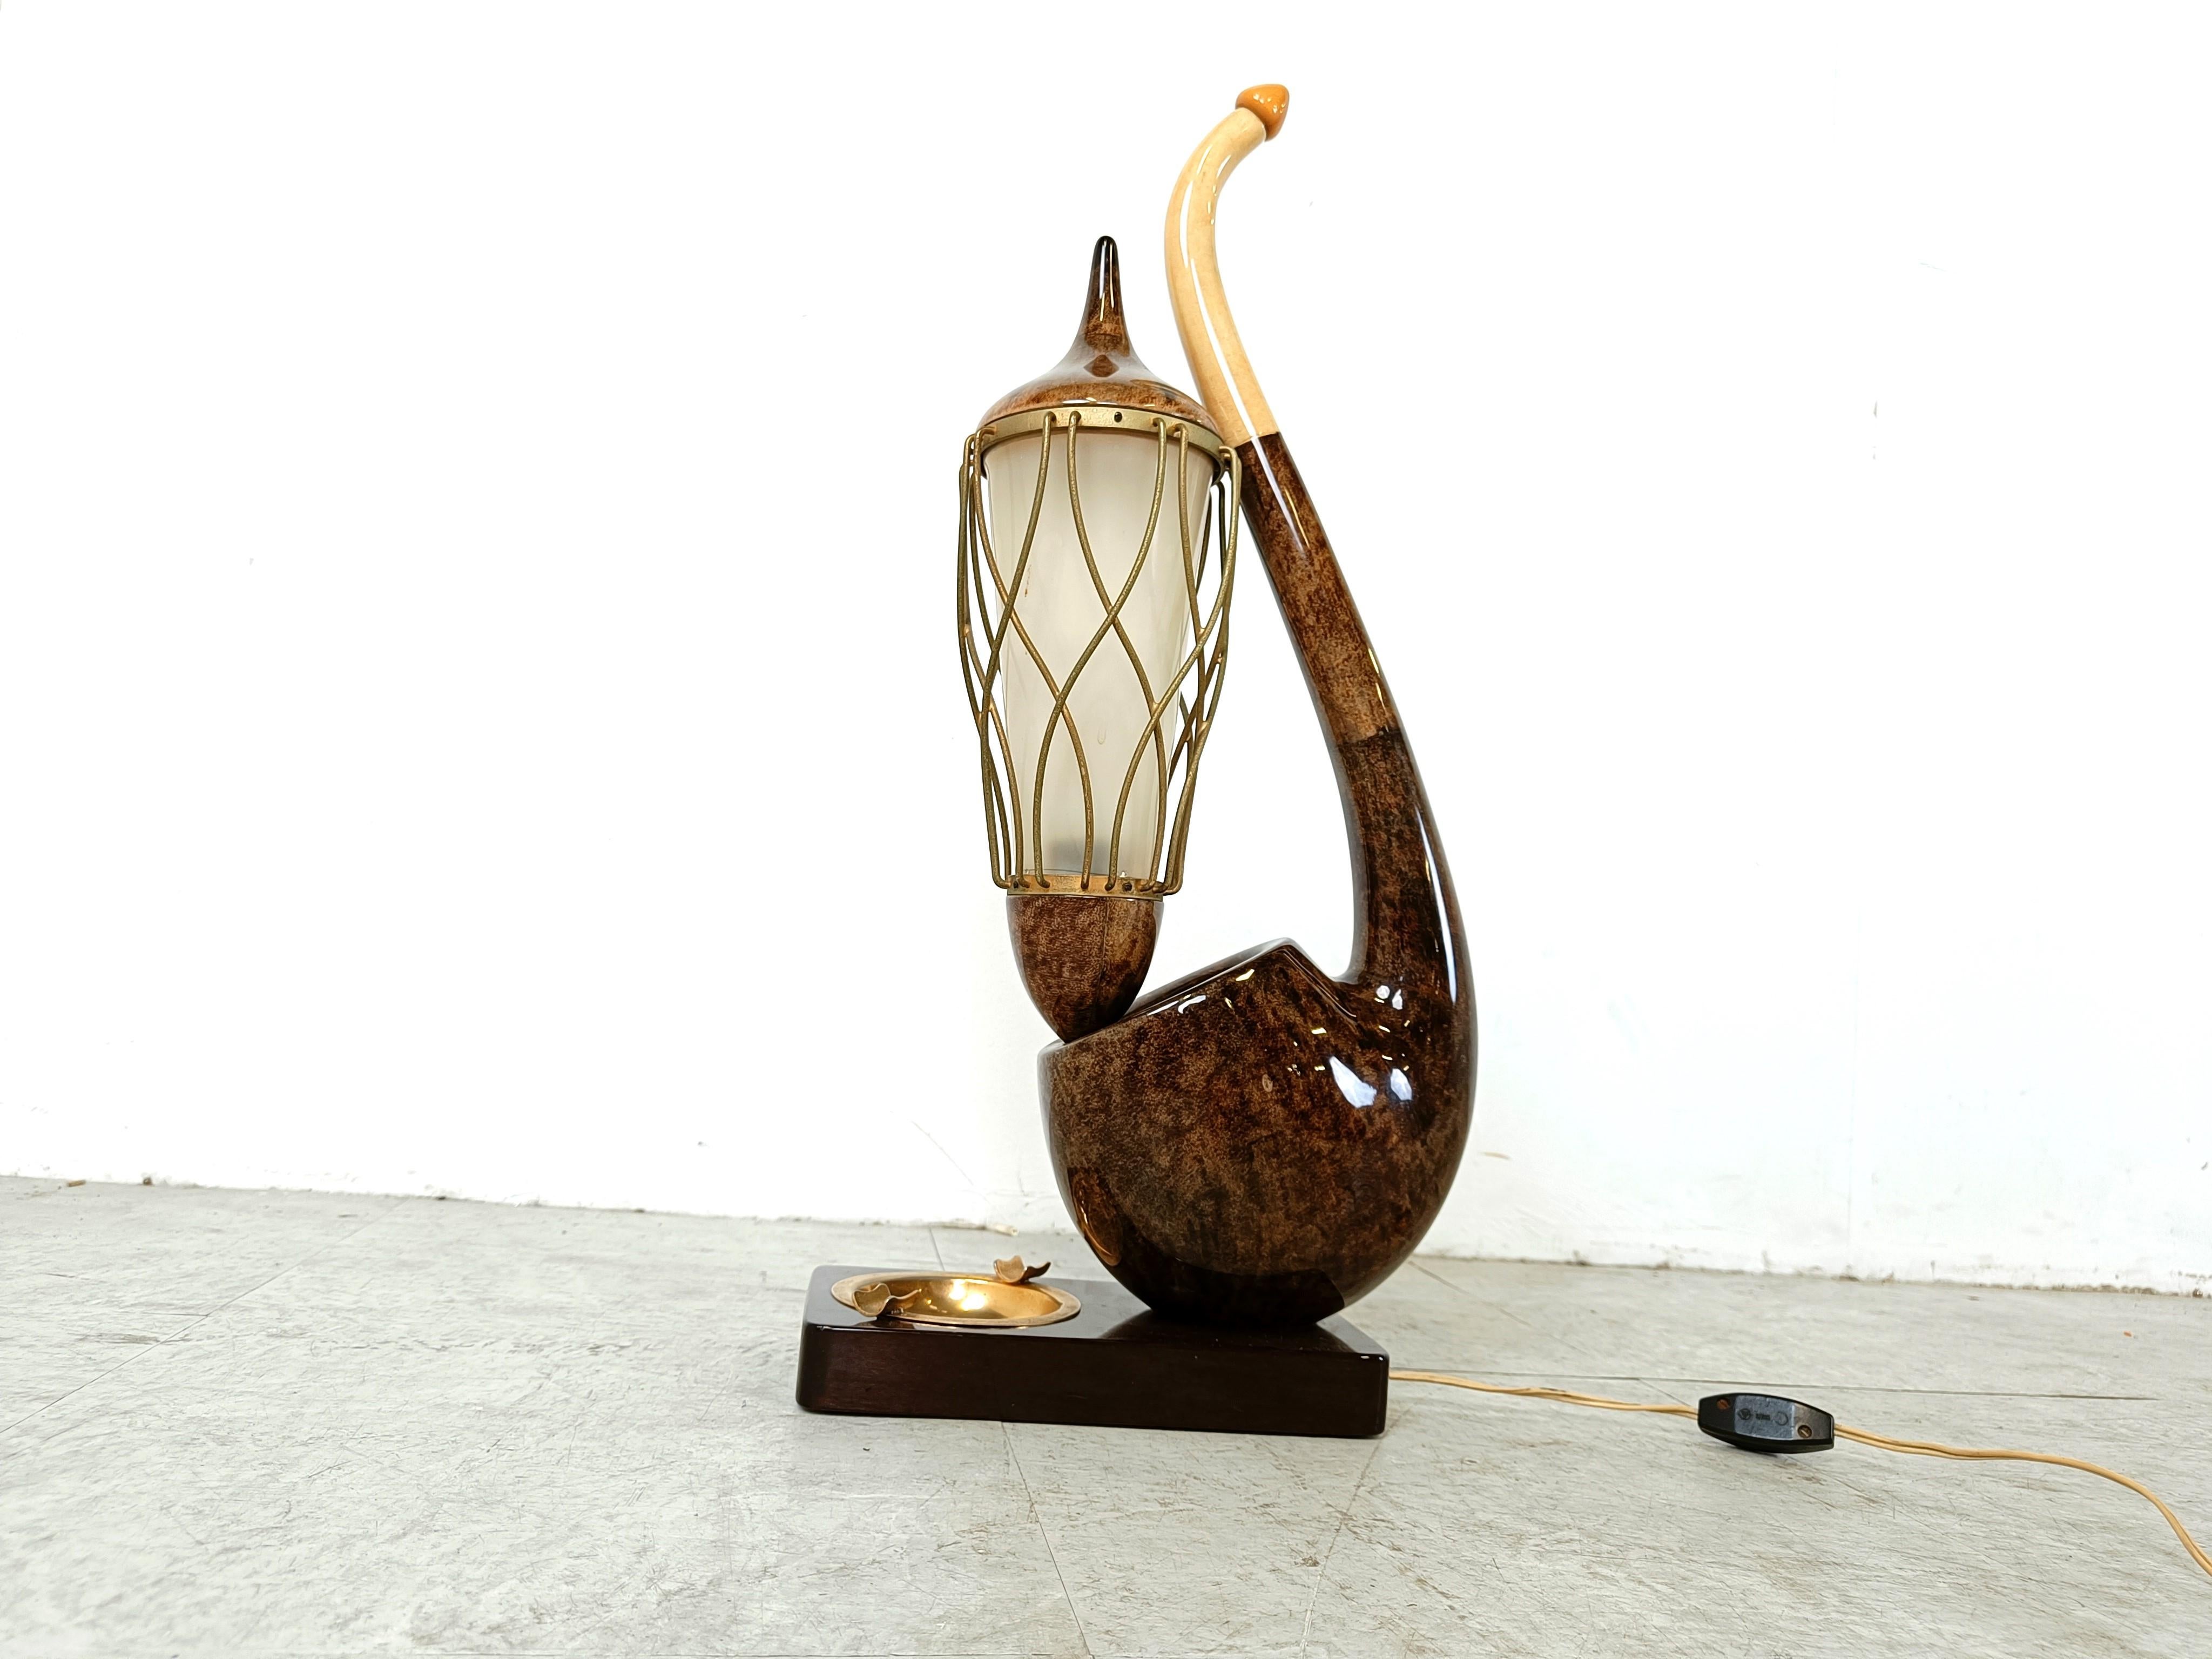 Seltene moderne Tischlampe von Aldo Tura aus der Mitte des Jahrhunderts in Form einer Pfeife mit Fackellampe und einem Lampenschirm aus Kunststoff.

Sie hat auch einen in den Sockel der Lampe eingelassenen Aschenbecher aus Messing.

Hergestellt aus